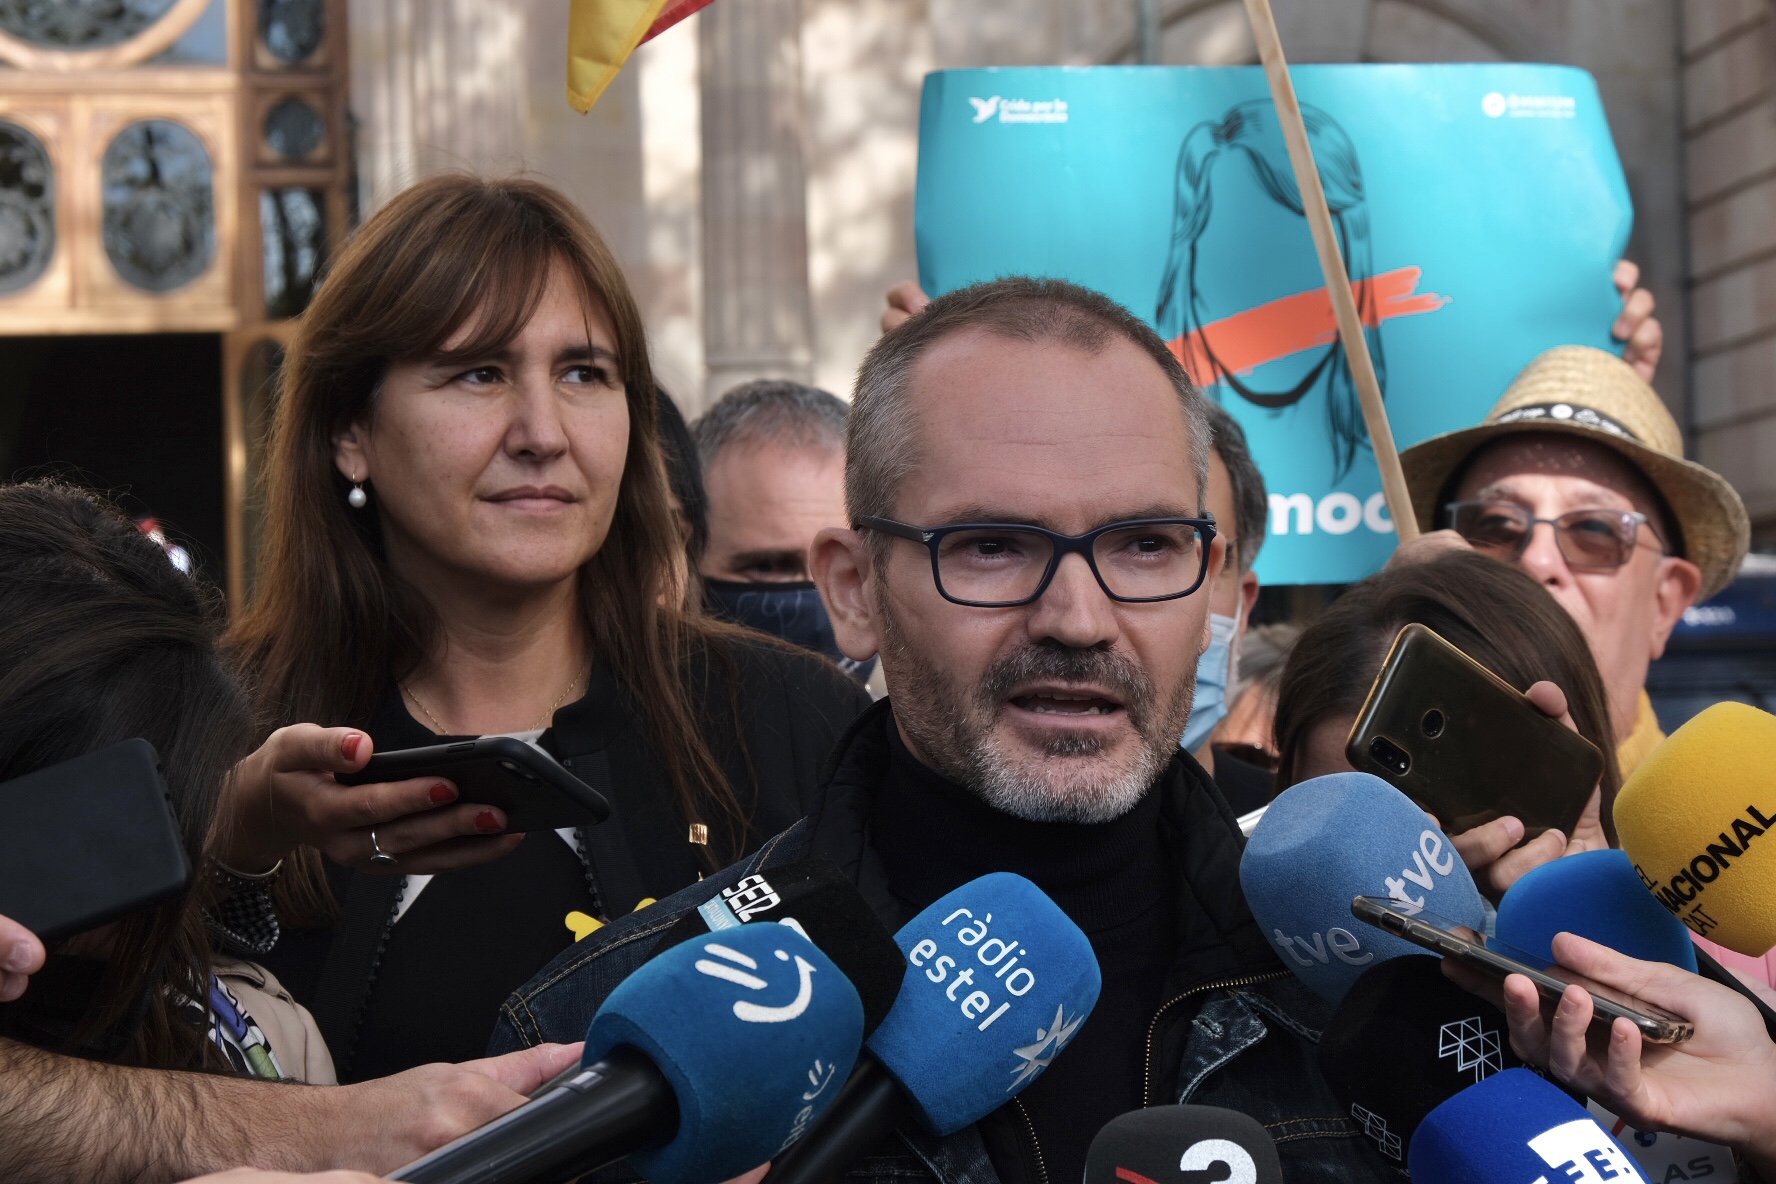 Martín Blanco, contra Laura Borràs i Josep Costa: "Galopant degradació de Catalunya"